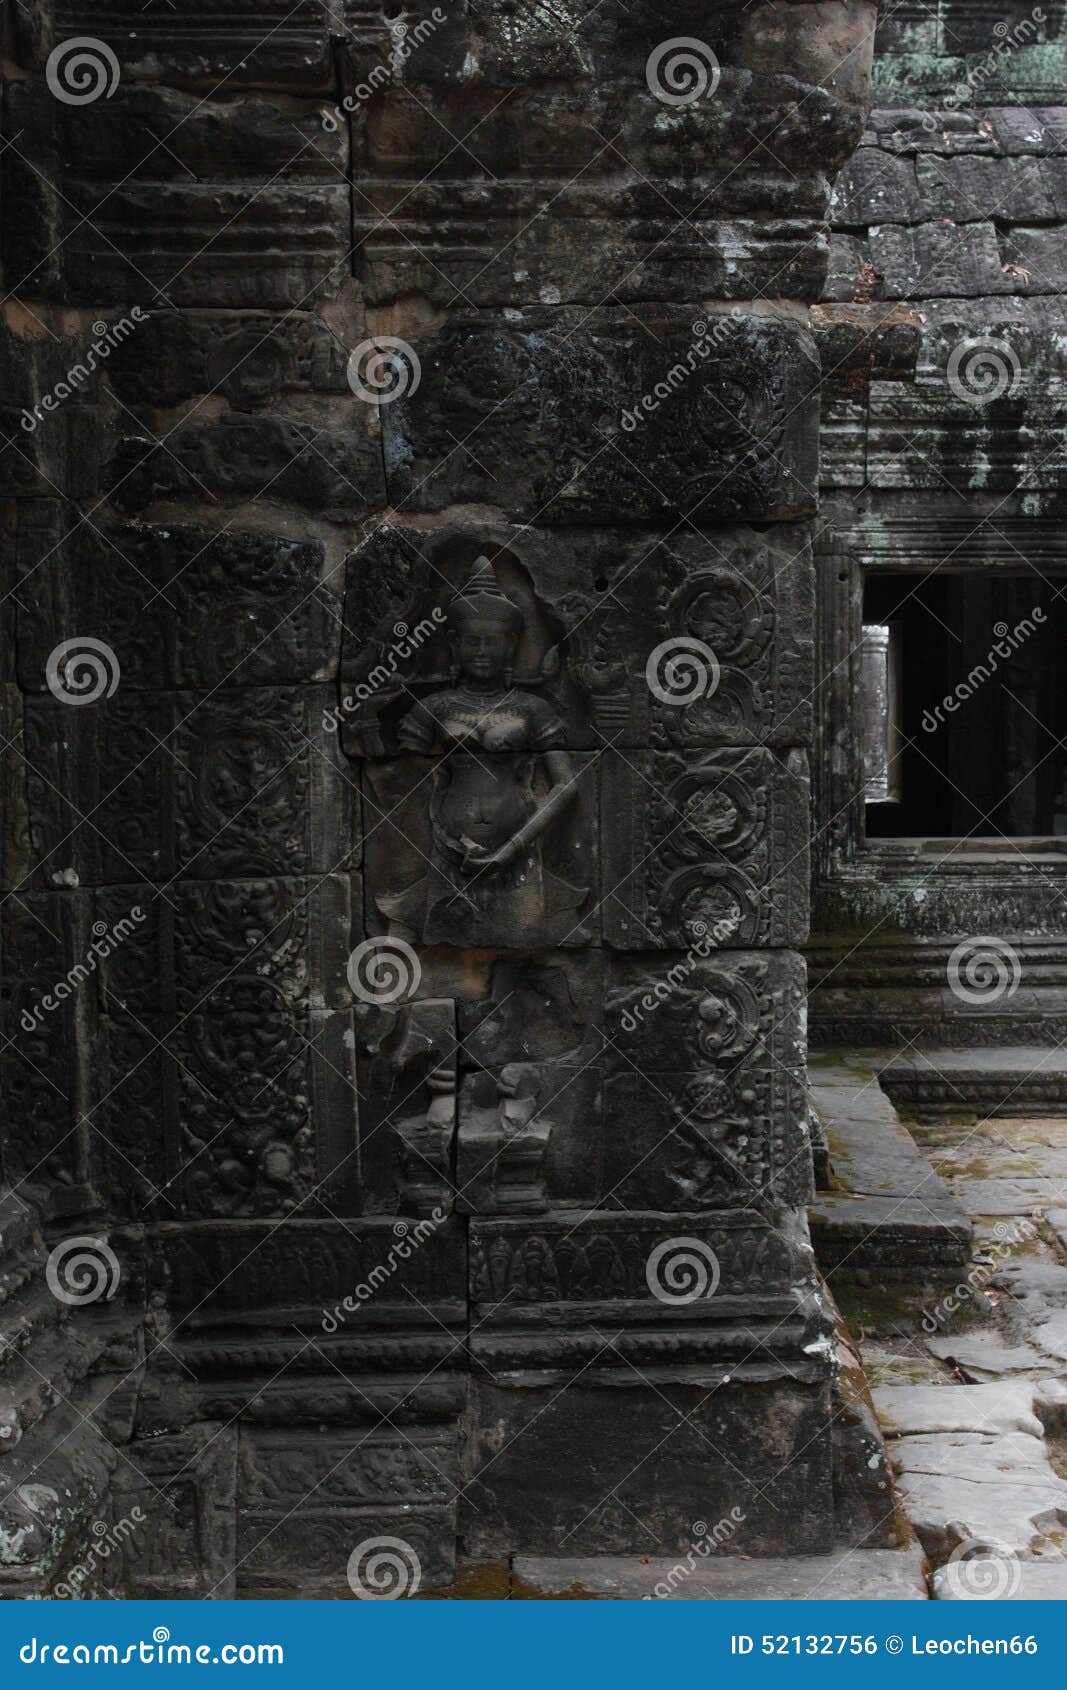 banteay kedi temple in angkor